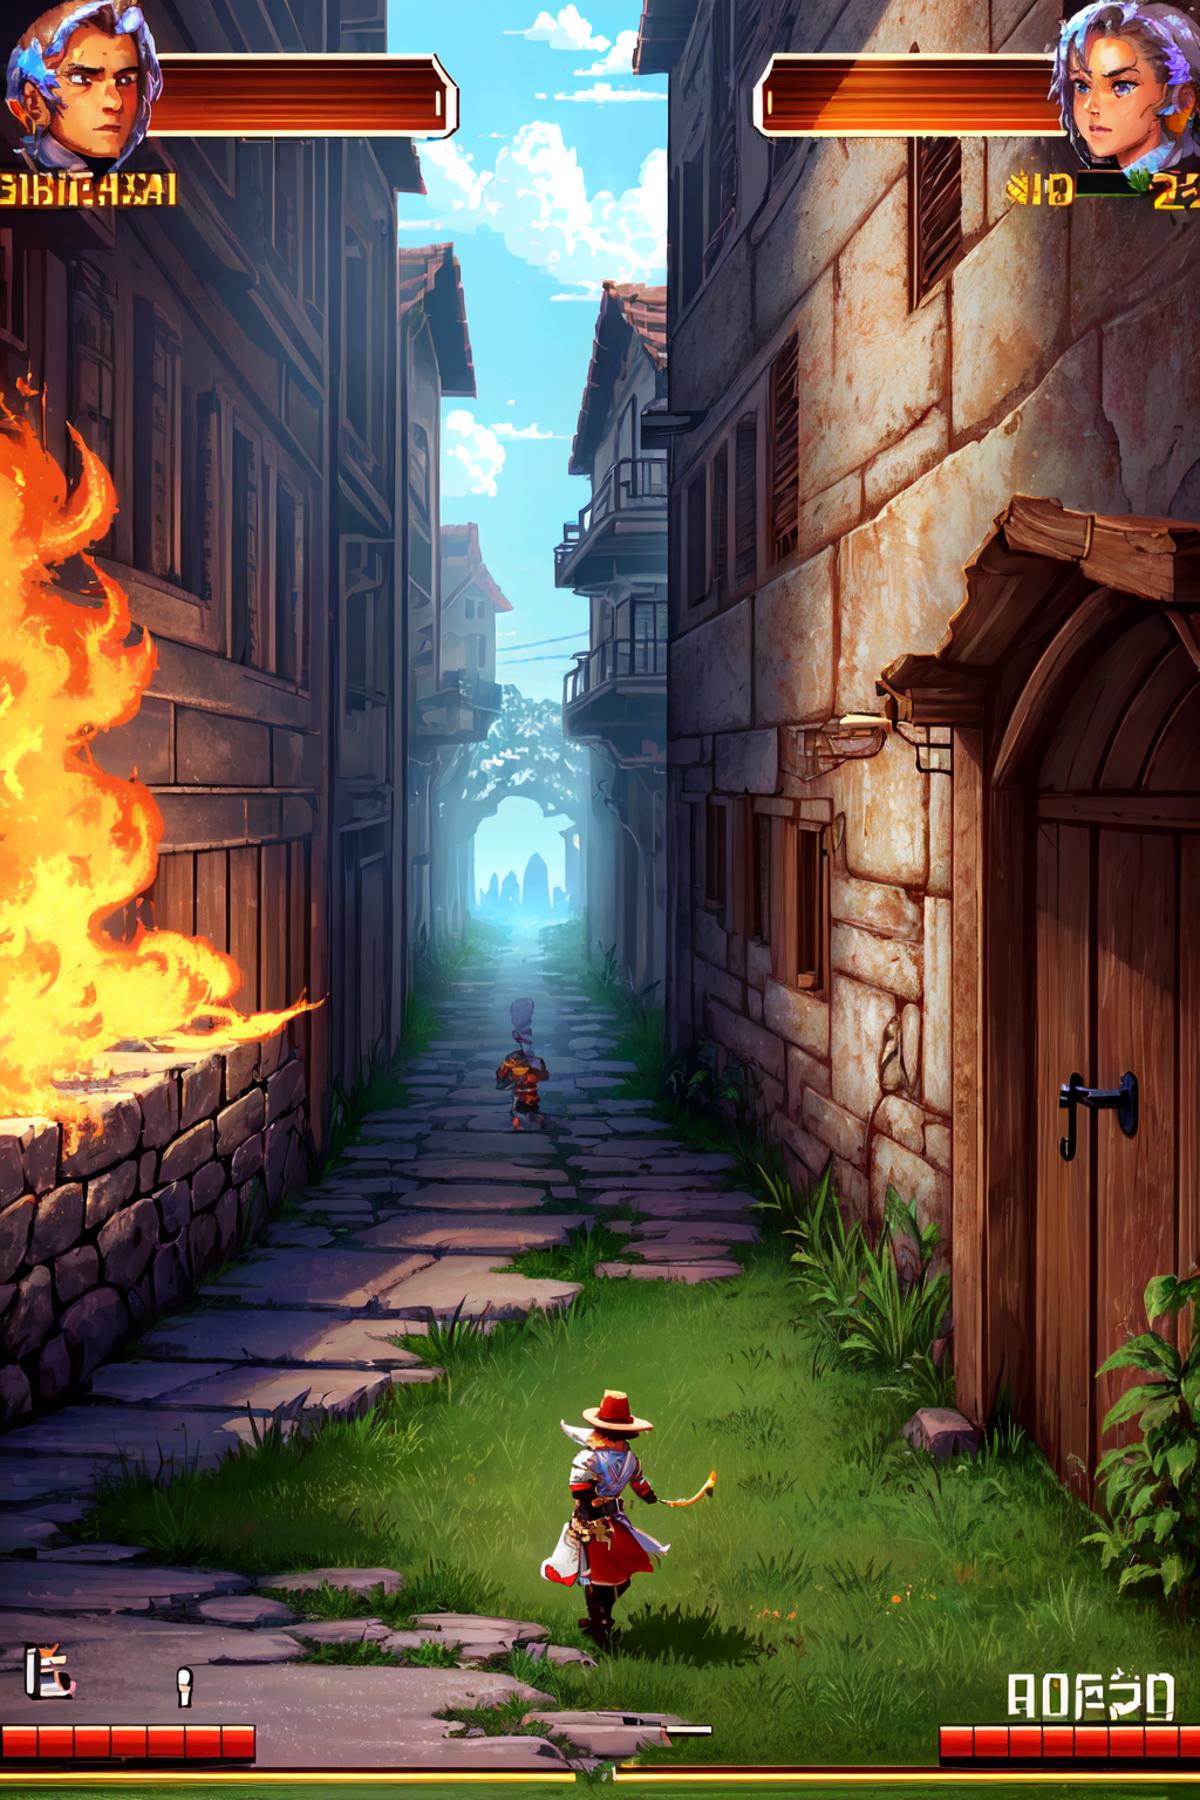 Genesis / Megadrive Gameplay screenshot image by NostalgiaForever